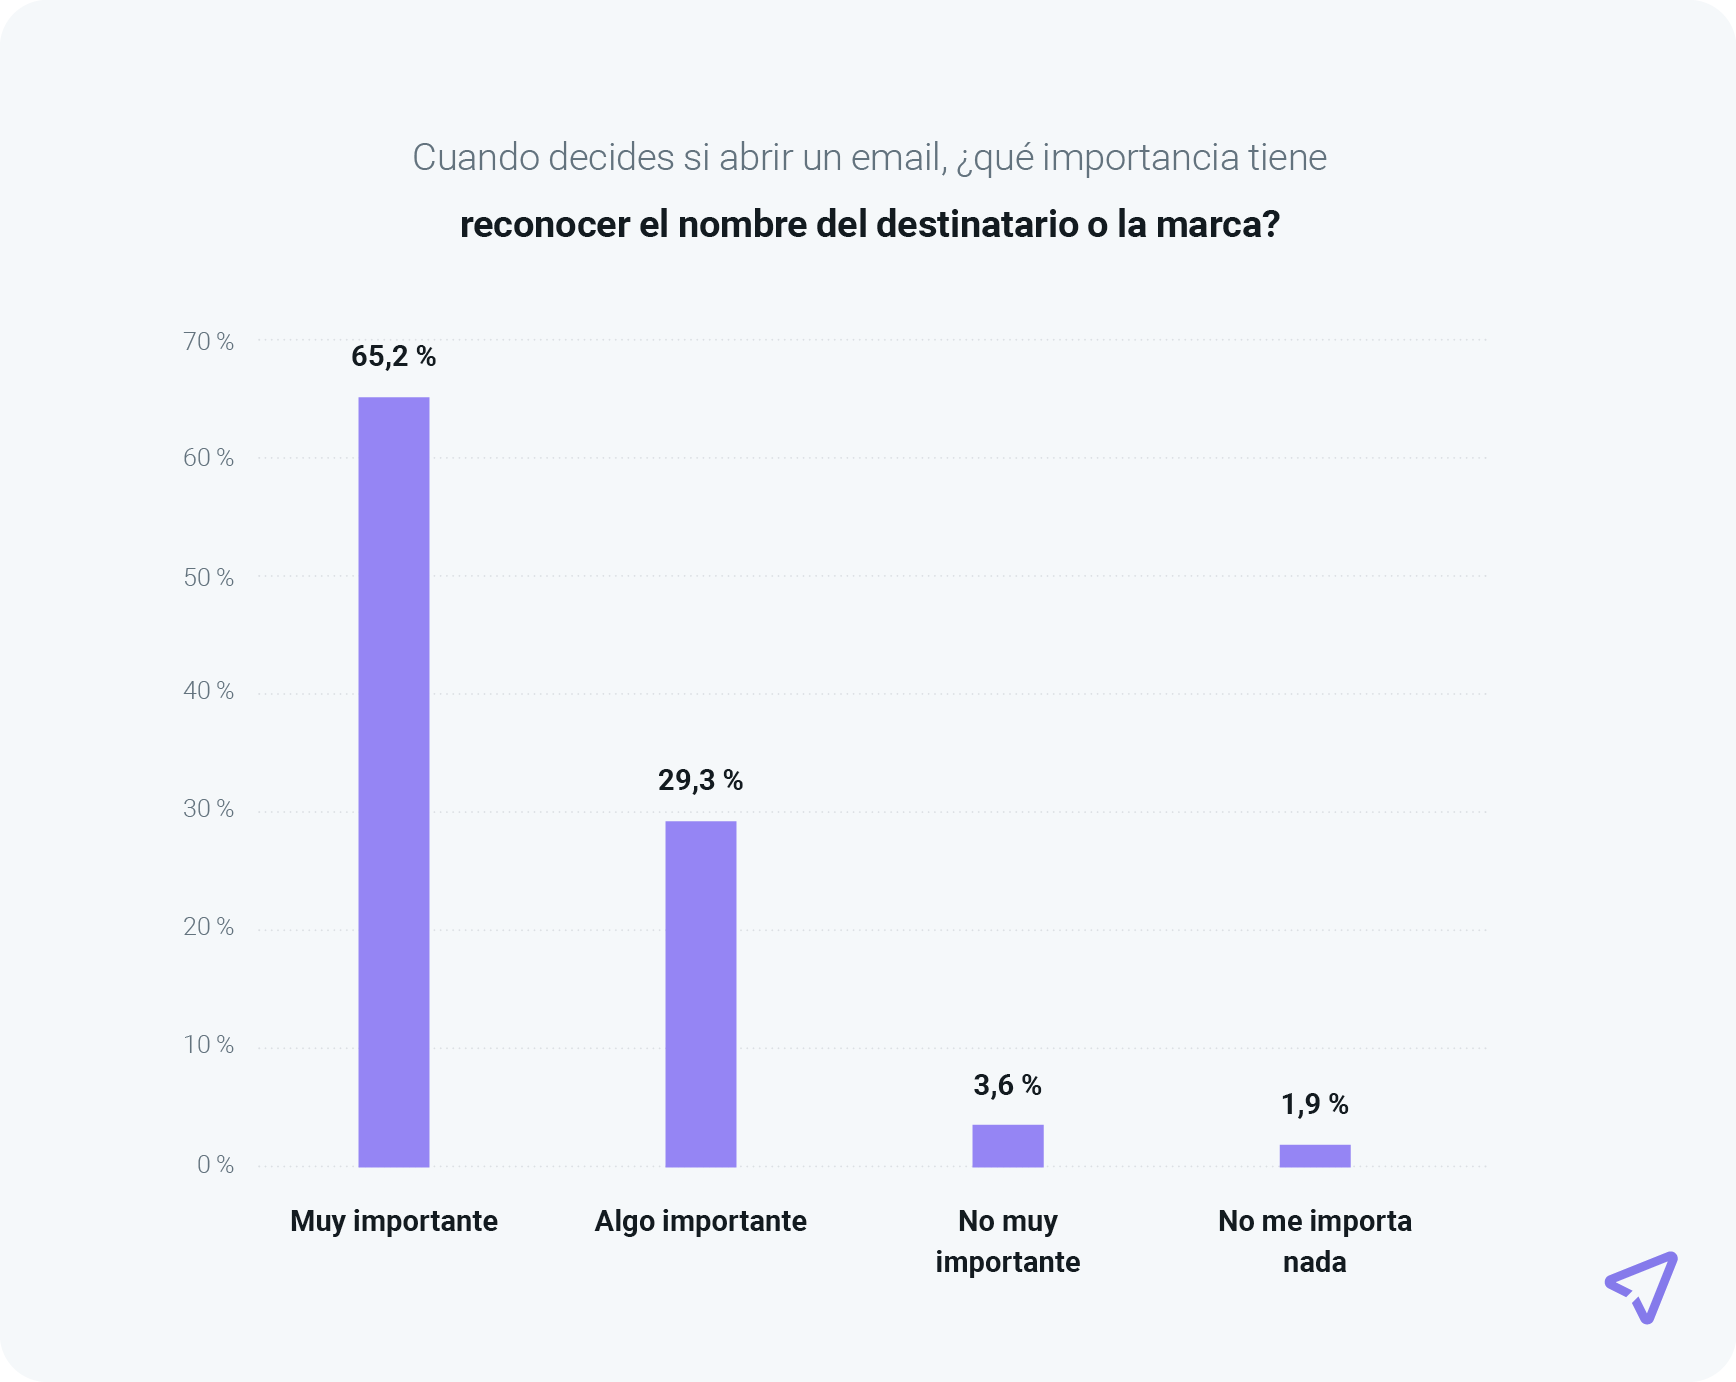 El gráfico muestra que el 94,5 % de los consumidores considera que la marca es importante a la hora de abrir un email